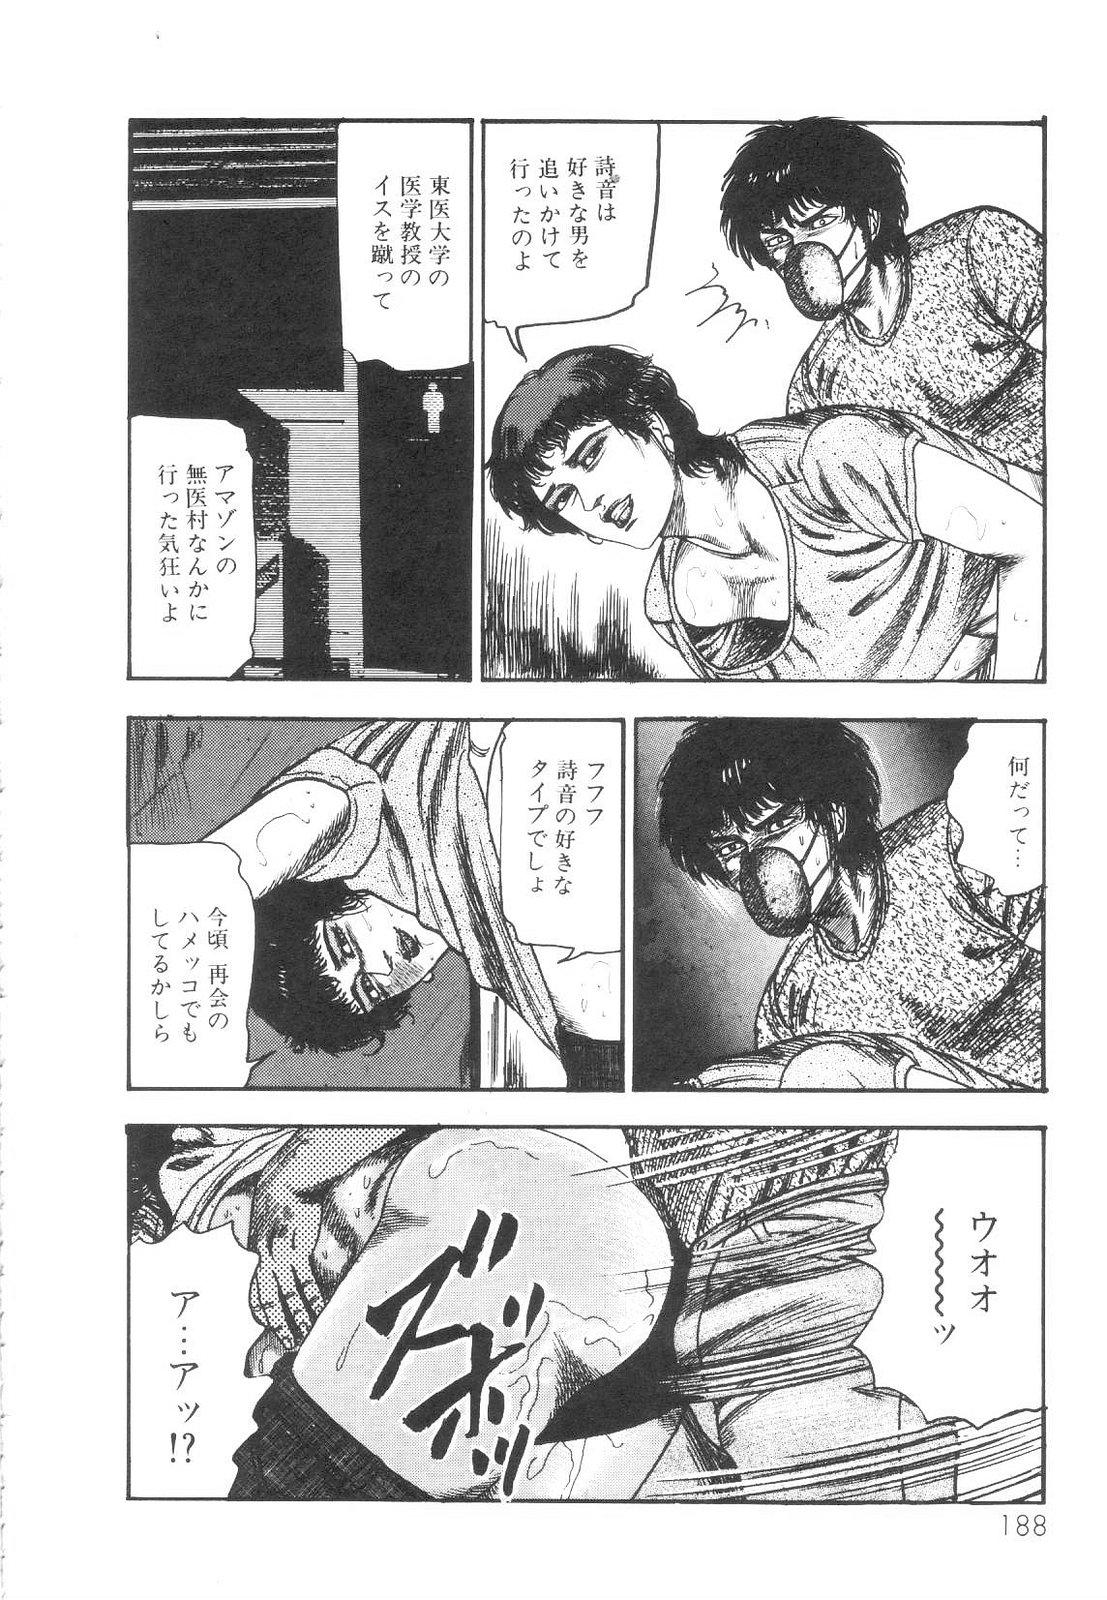 Shiro no Mokushiroku Vol. 1 - Sei Shojo Shion no Shou 188